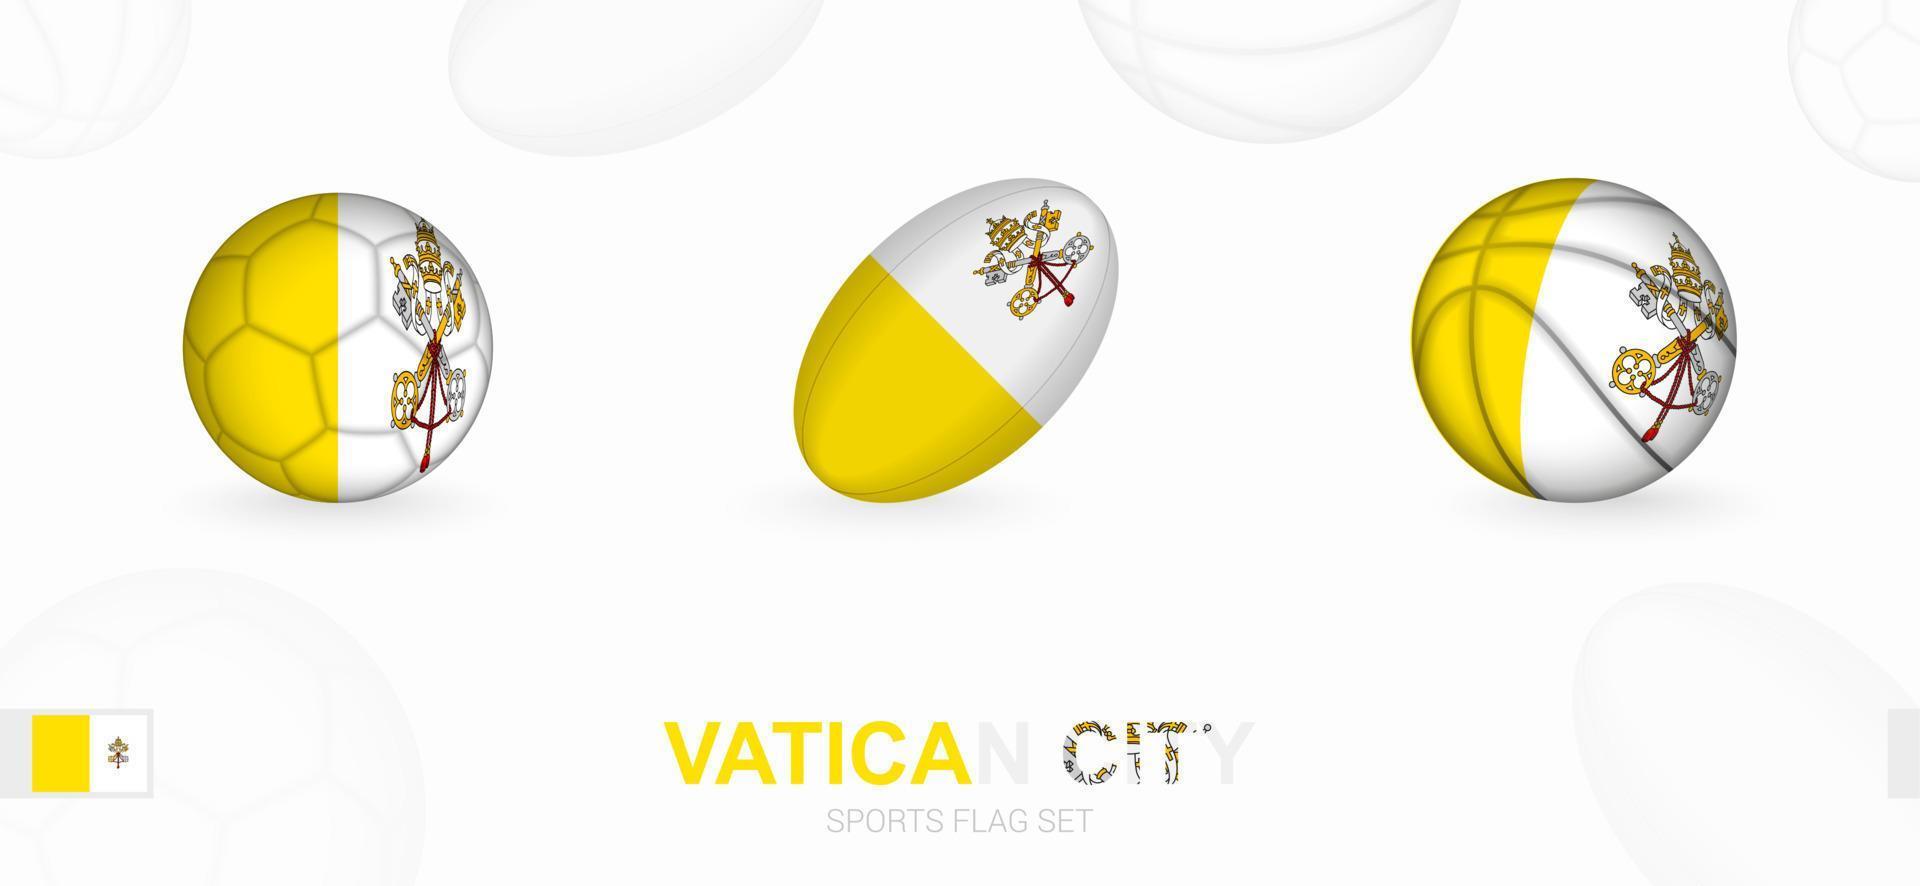 Deportes íconos para fútbol, rugby y baloncesto con el bandera de Vaticano ciudad. vector